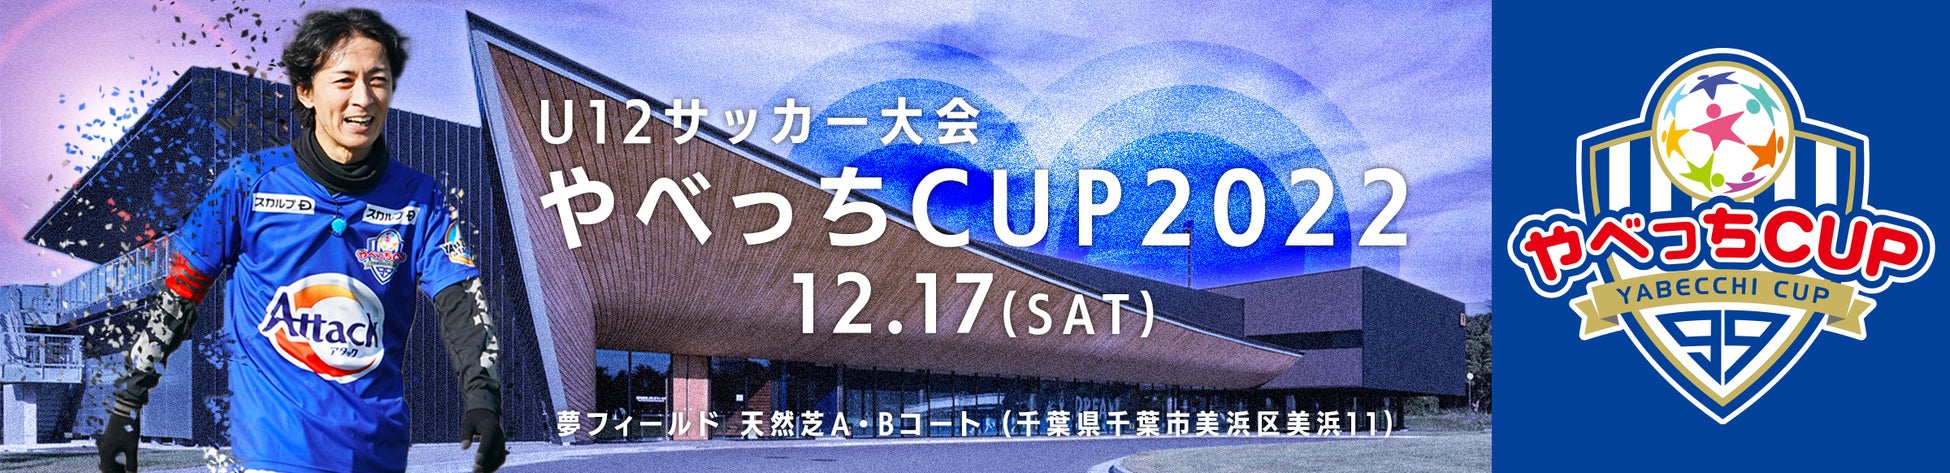 ナインティナイン・矢部浩之が主催する子どもたちのサッカー大会『やべっちCUP 2022』